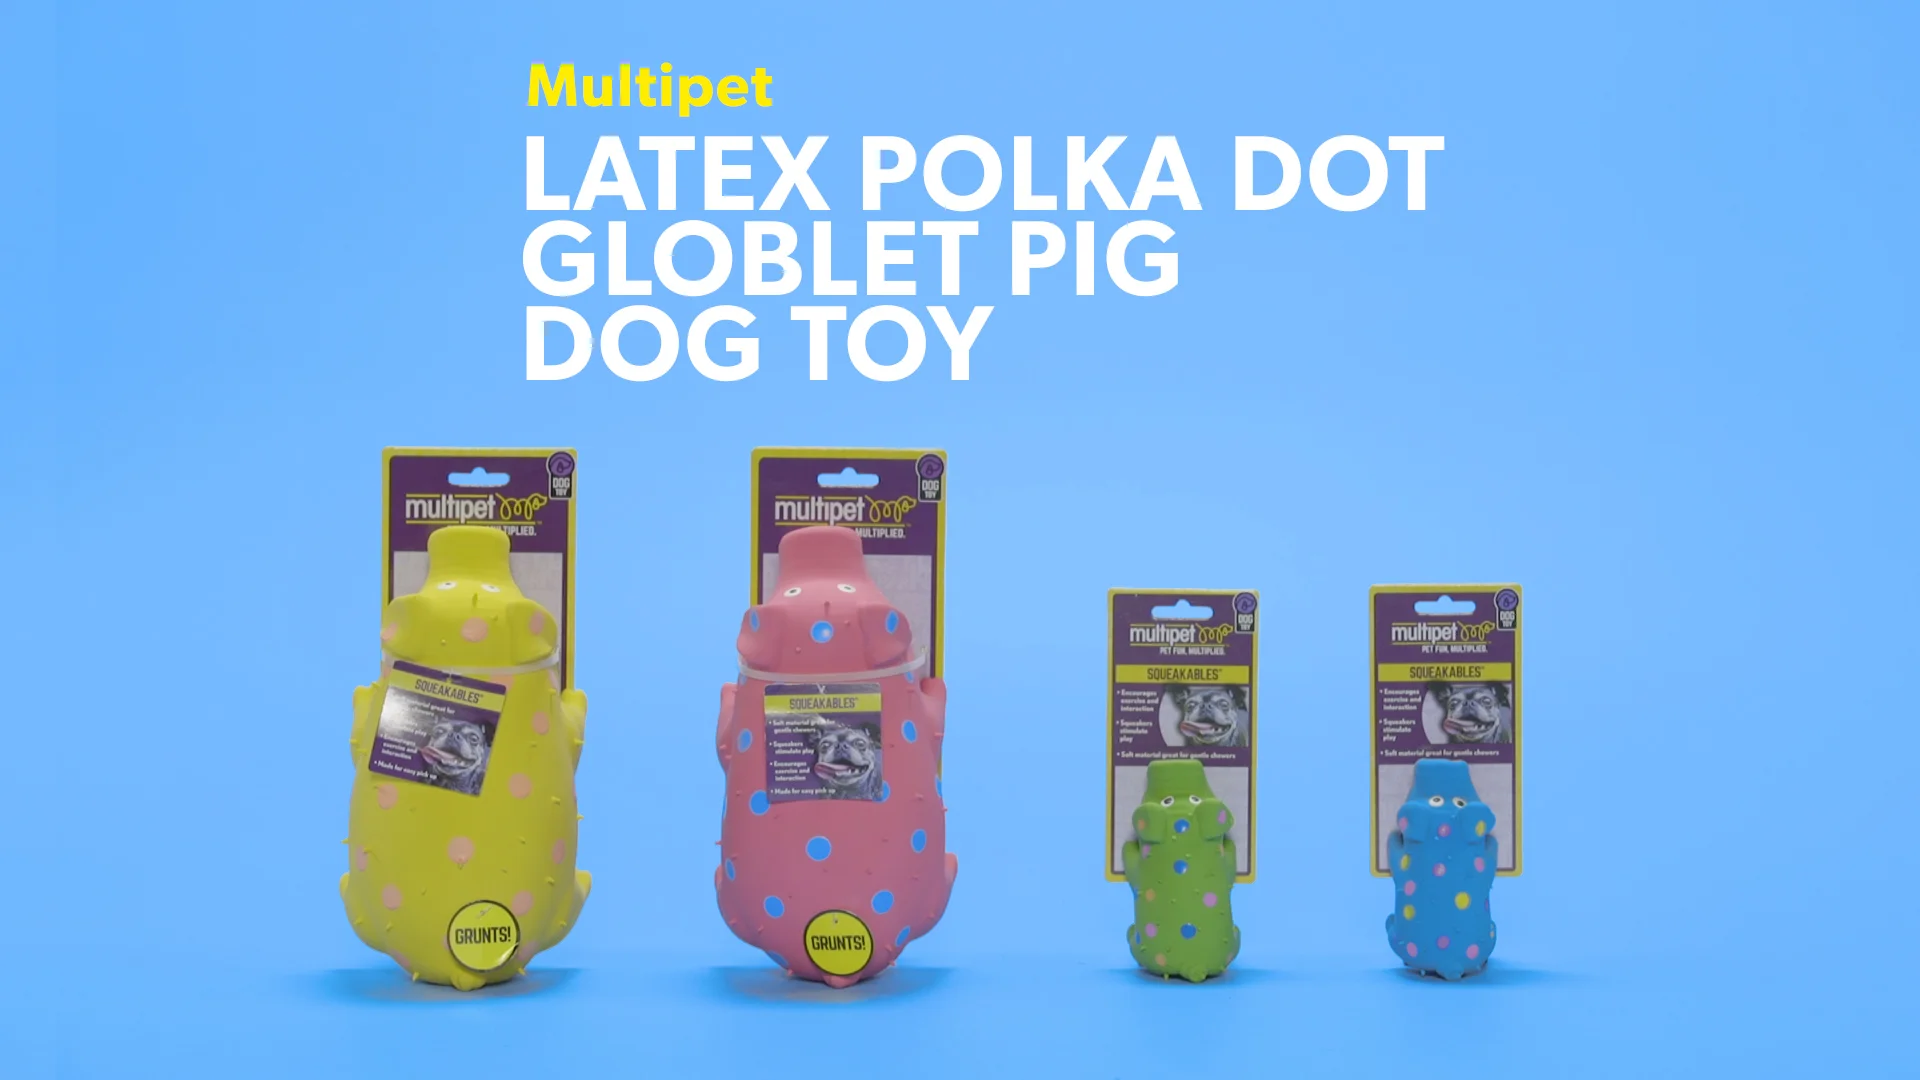 squealing pig dog toy